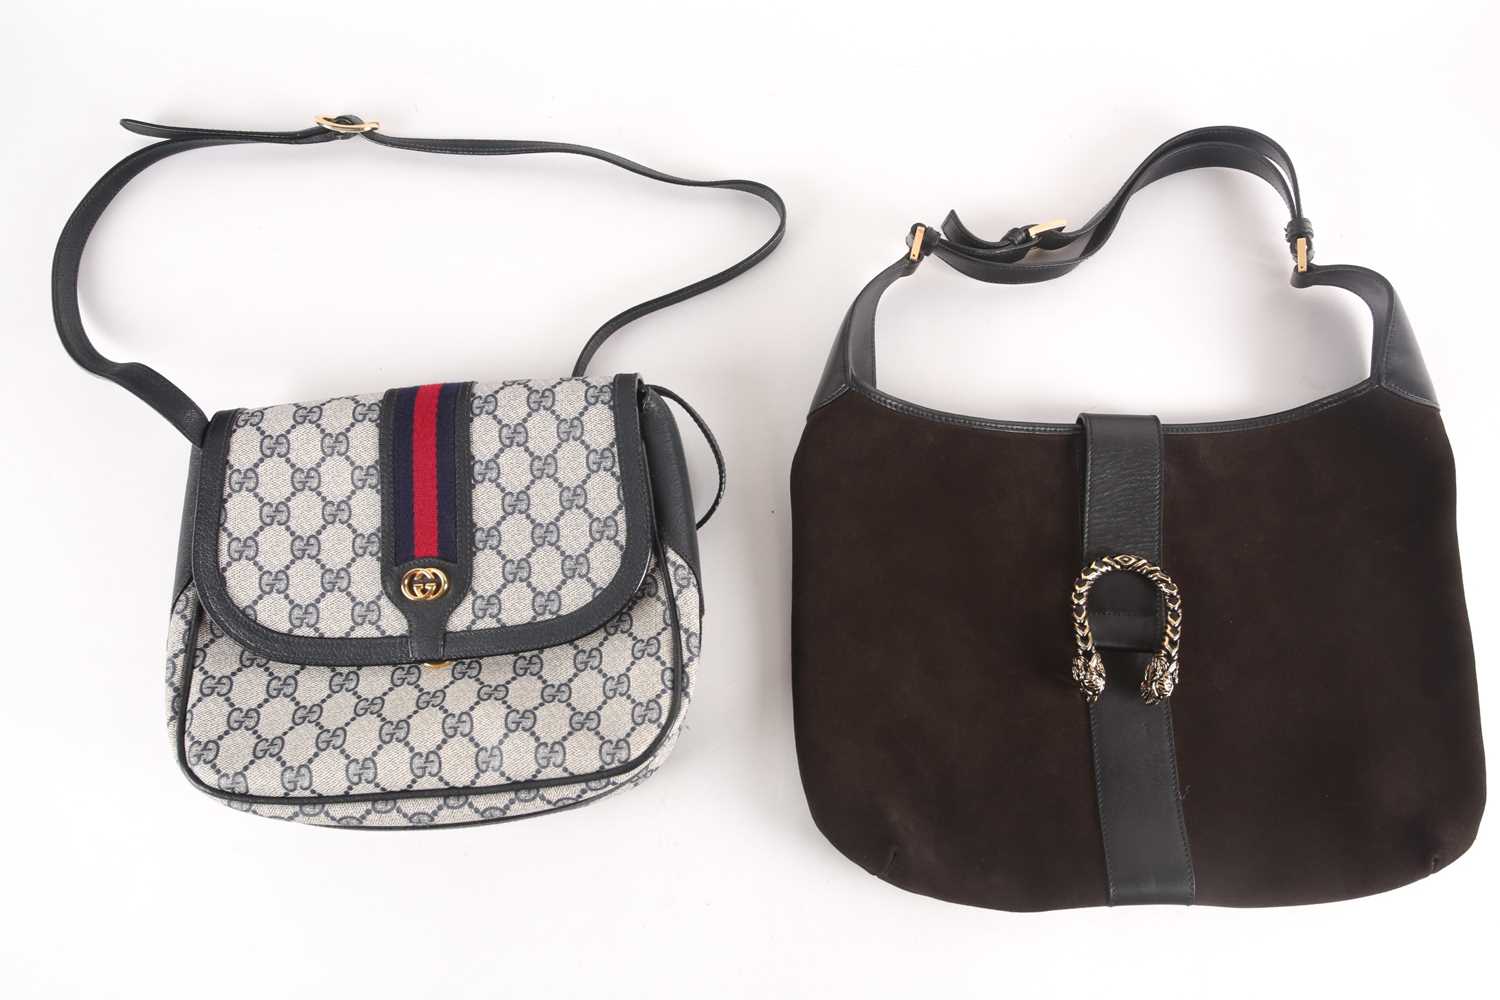 Sold at Auction: Gucci Black Suede Monogram Shoulder Bag